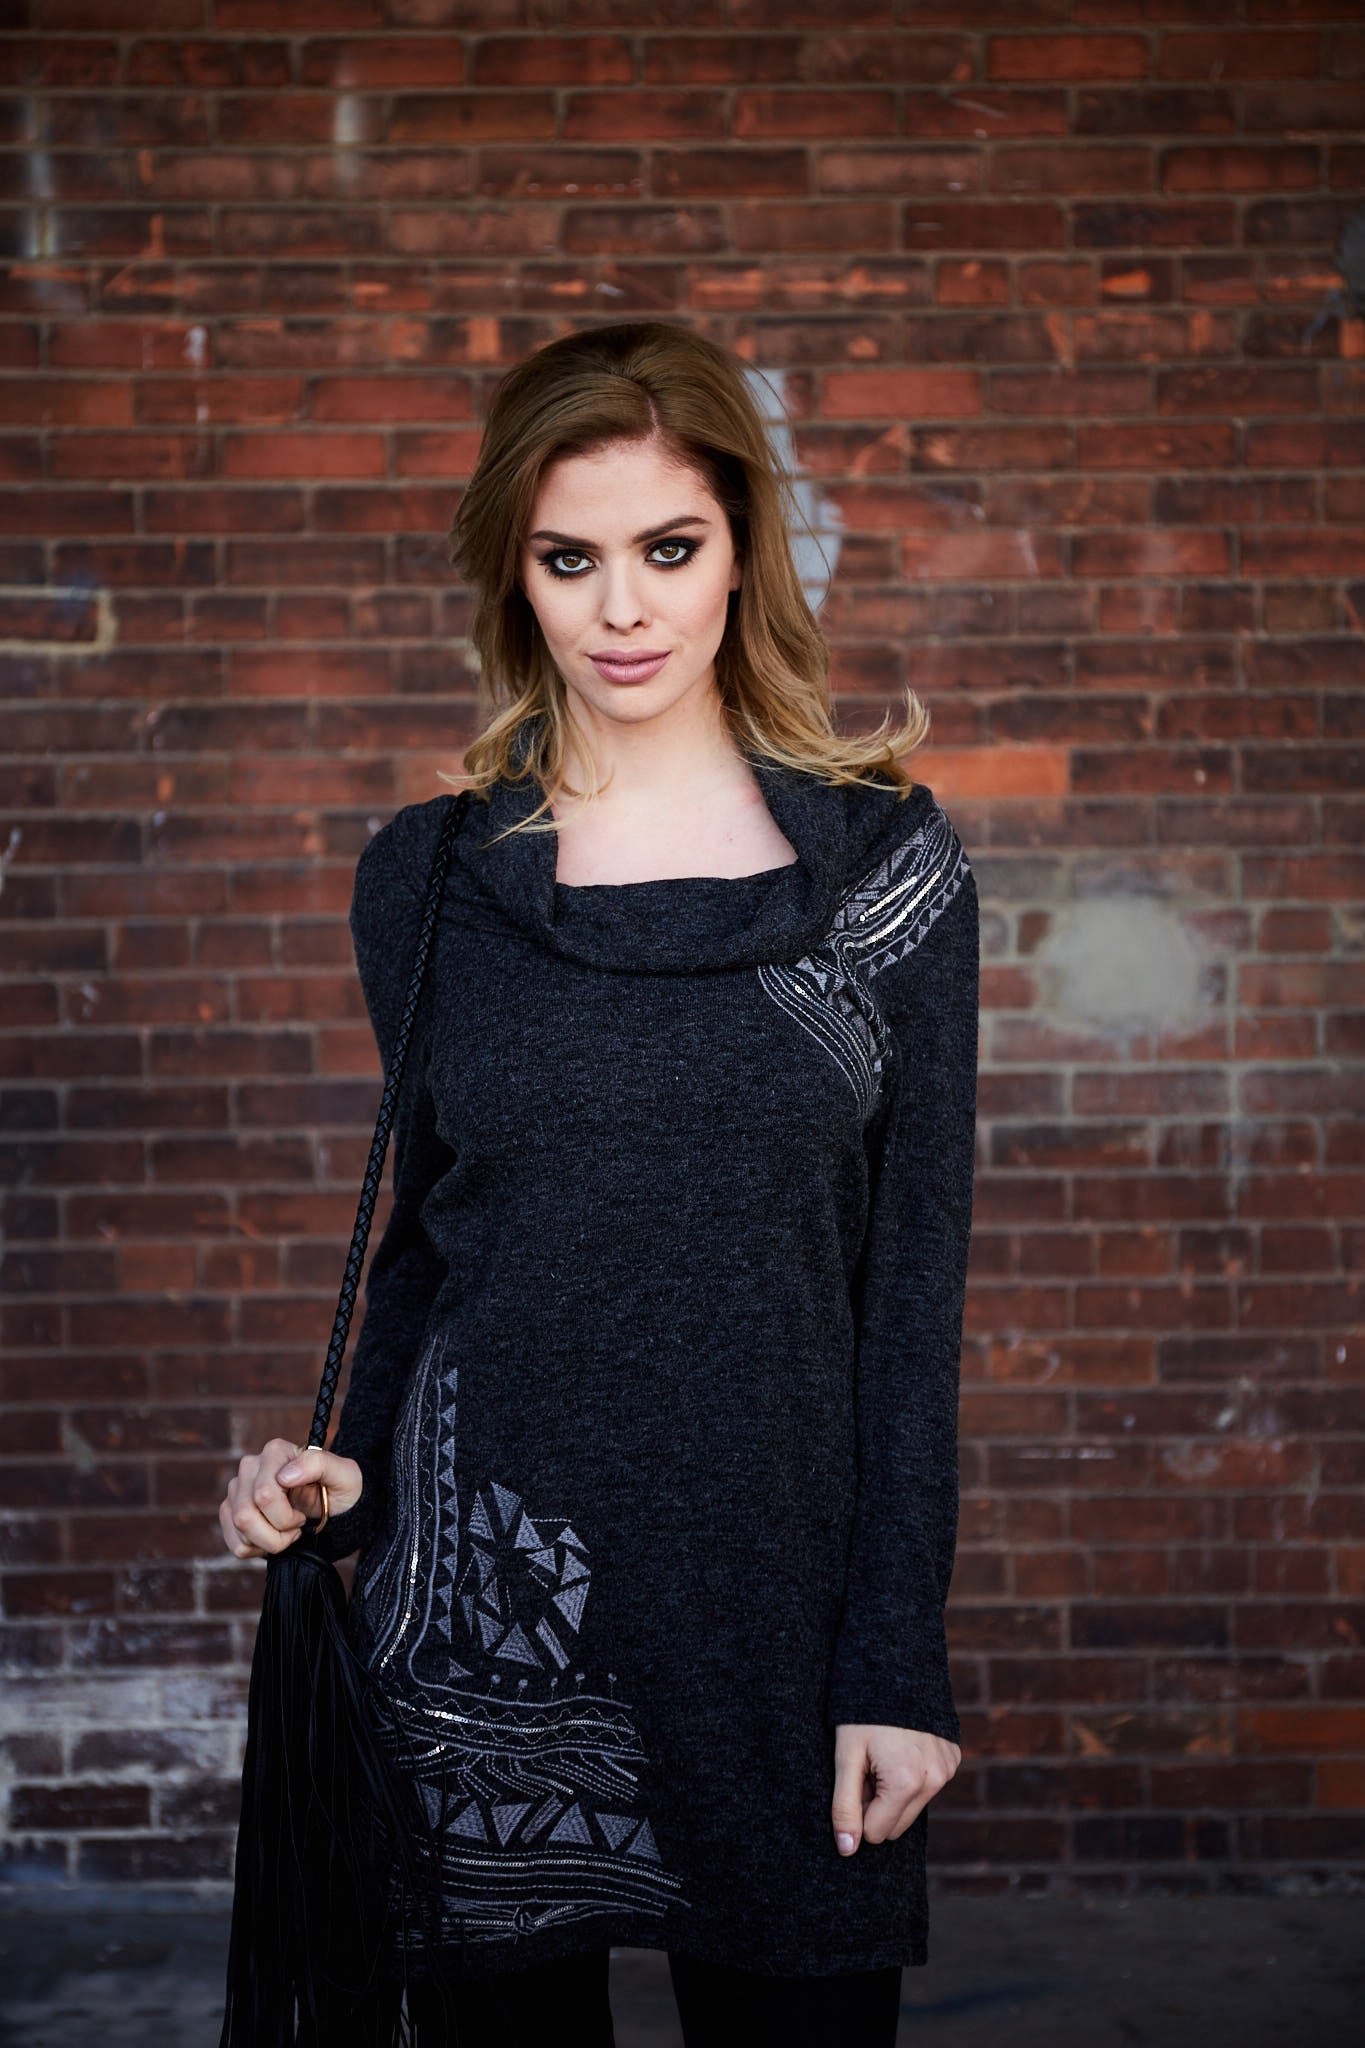 Buy Women's Dark Grey Cozy Turtle Neck Sweaters Online